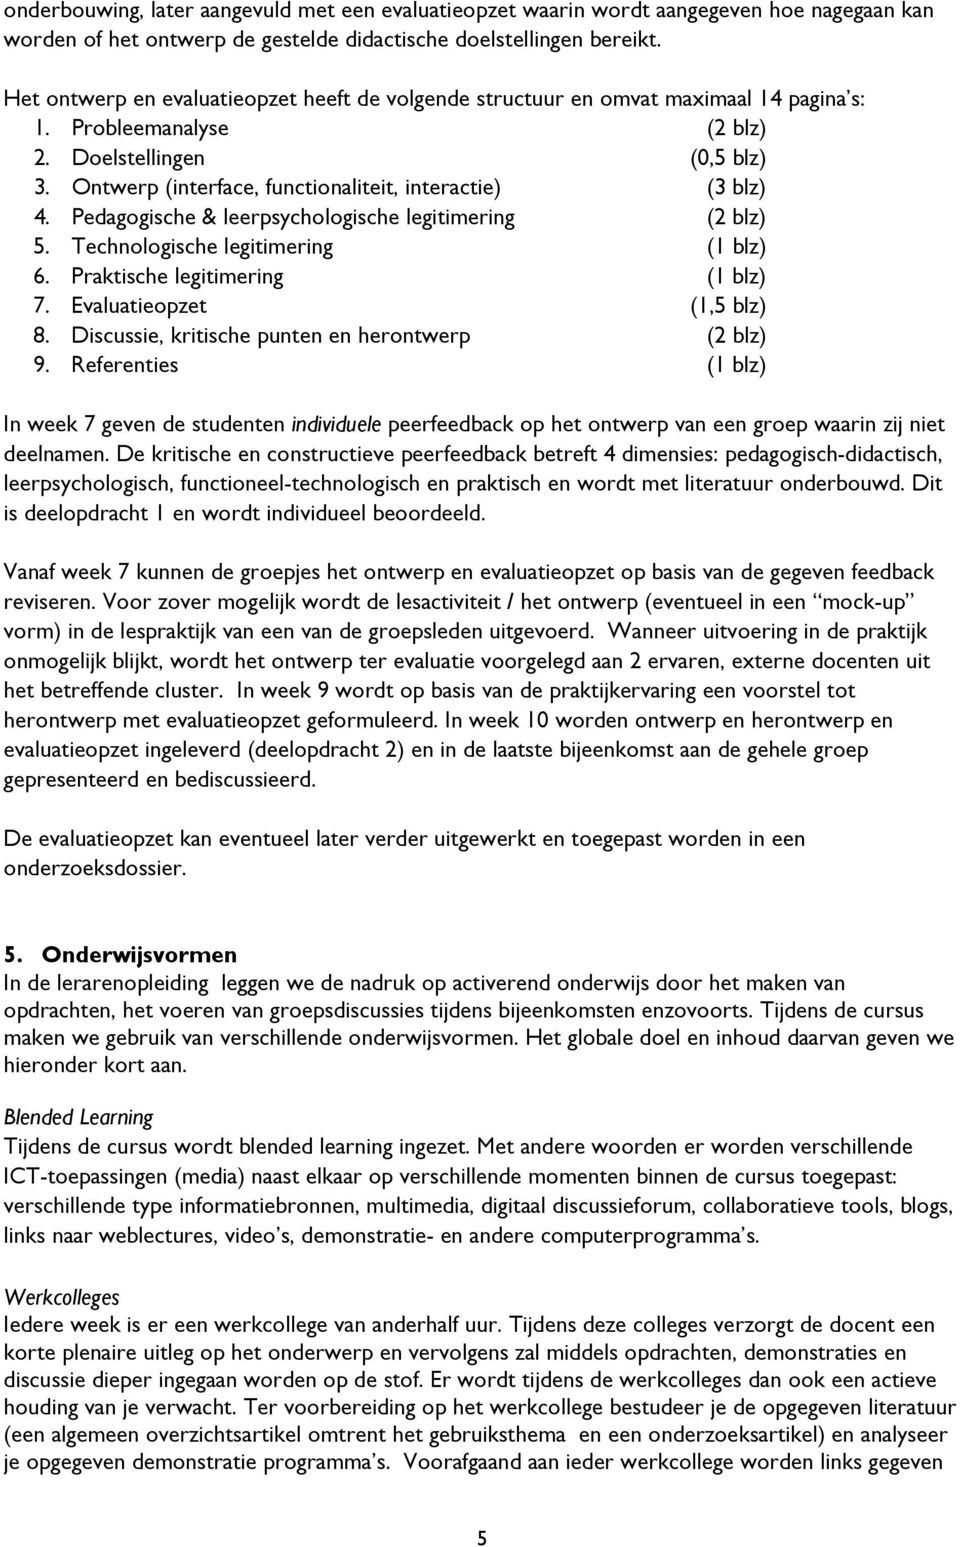 Ontwerp (interface, functionaliteit, interactie) (3 blz) 4. Pedagogische & leerpsychologische legitimering (2 blz) 5. Technologische legitimering (1 blz) 6. Praktische legitimering (1 blz) 7.